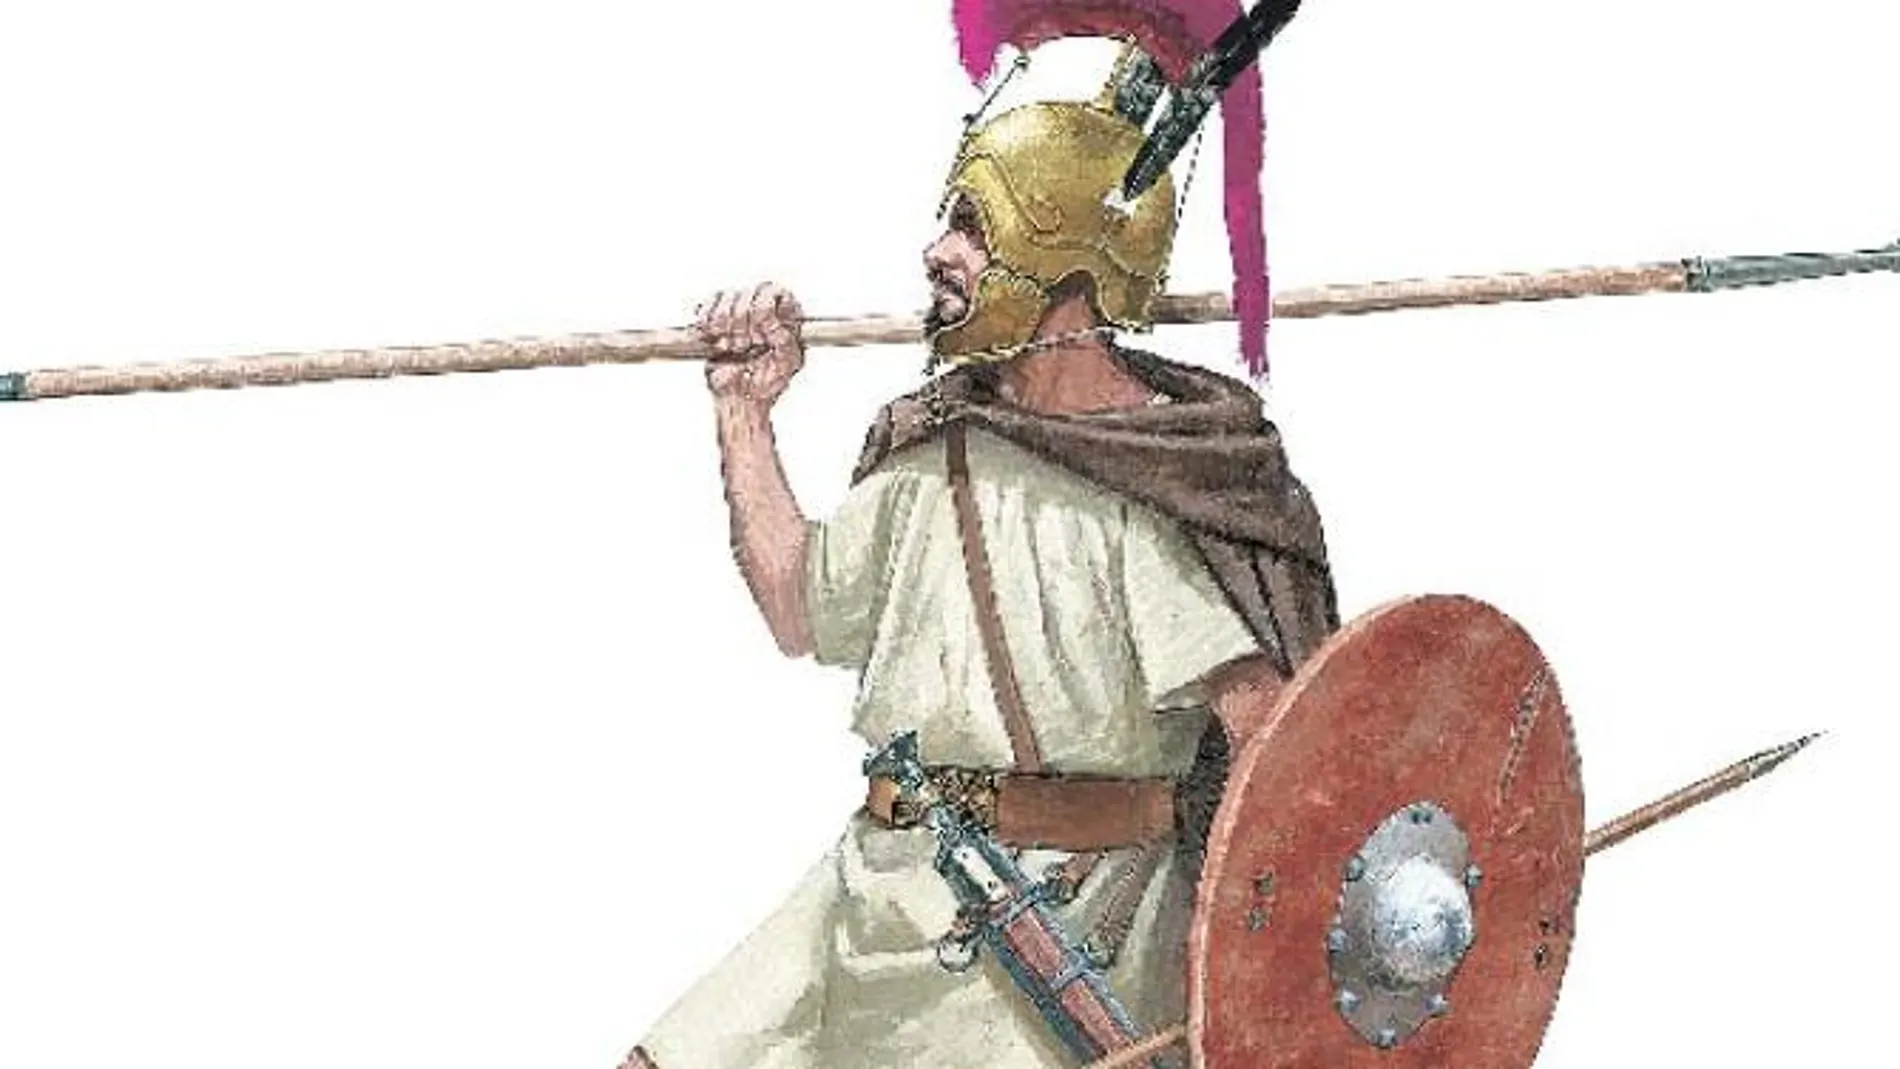 Recreación de uno de los guerreros celtibéricos que pisaron la península antes del desembarco romano